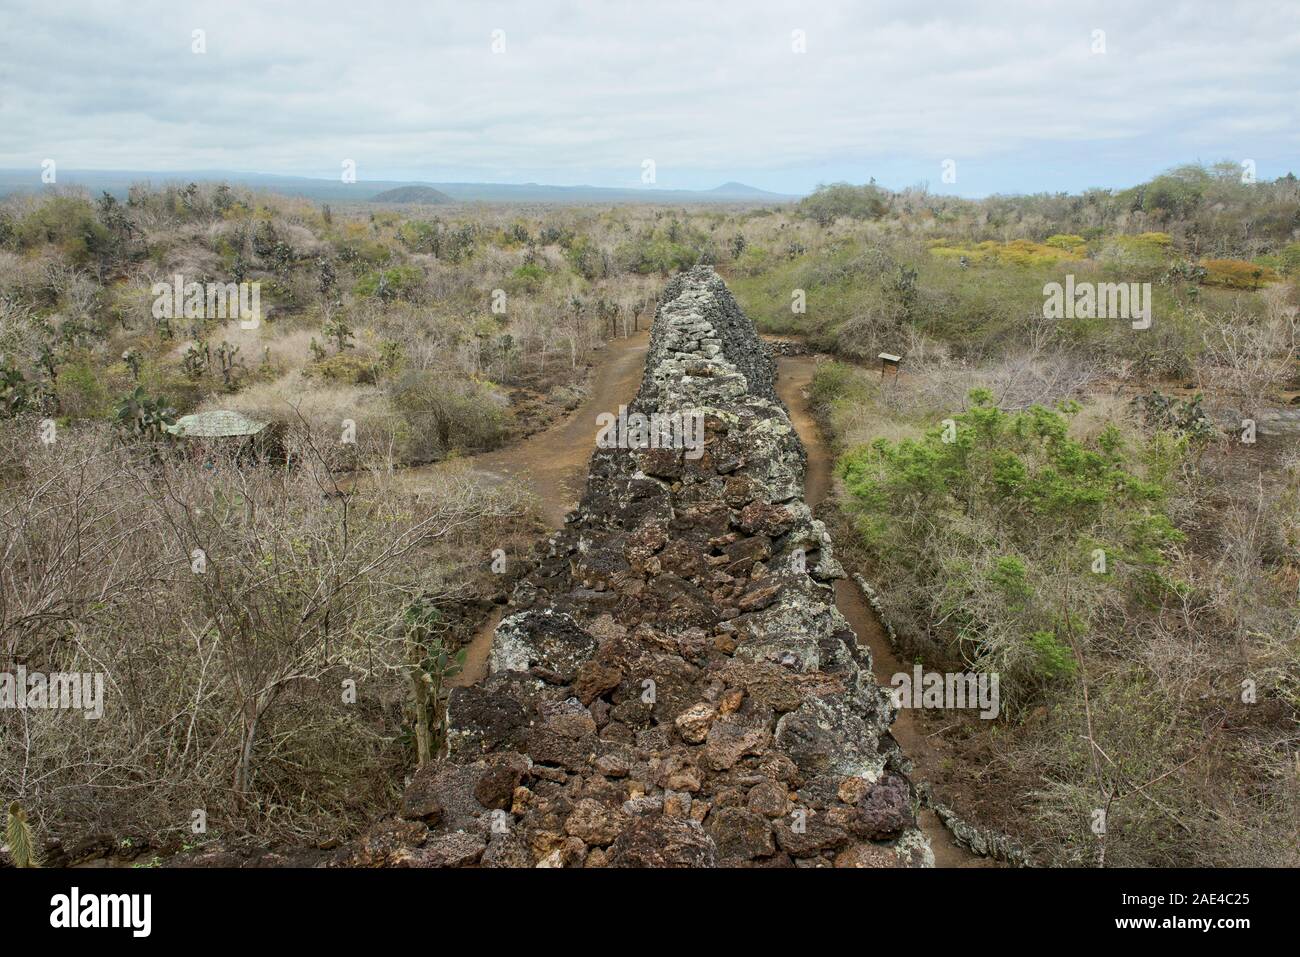 El Muro de las Lágrimas (Wall of Tears), Isla Isabela, Galapagos Islands, Ecuador Stock Photo